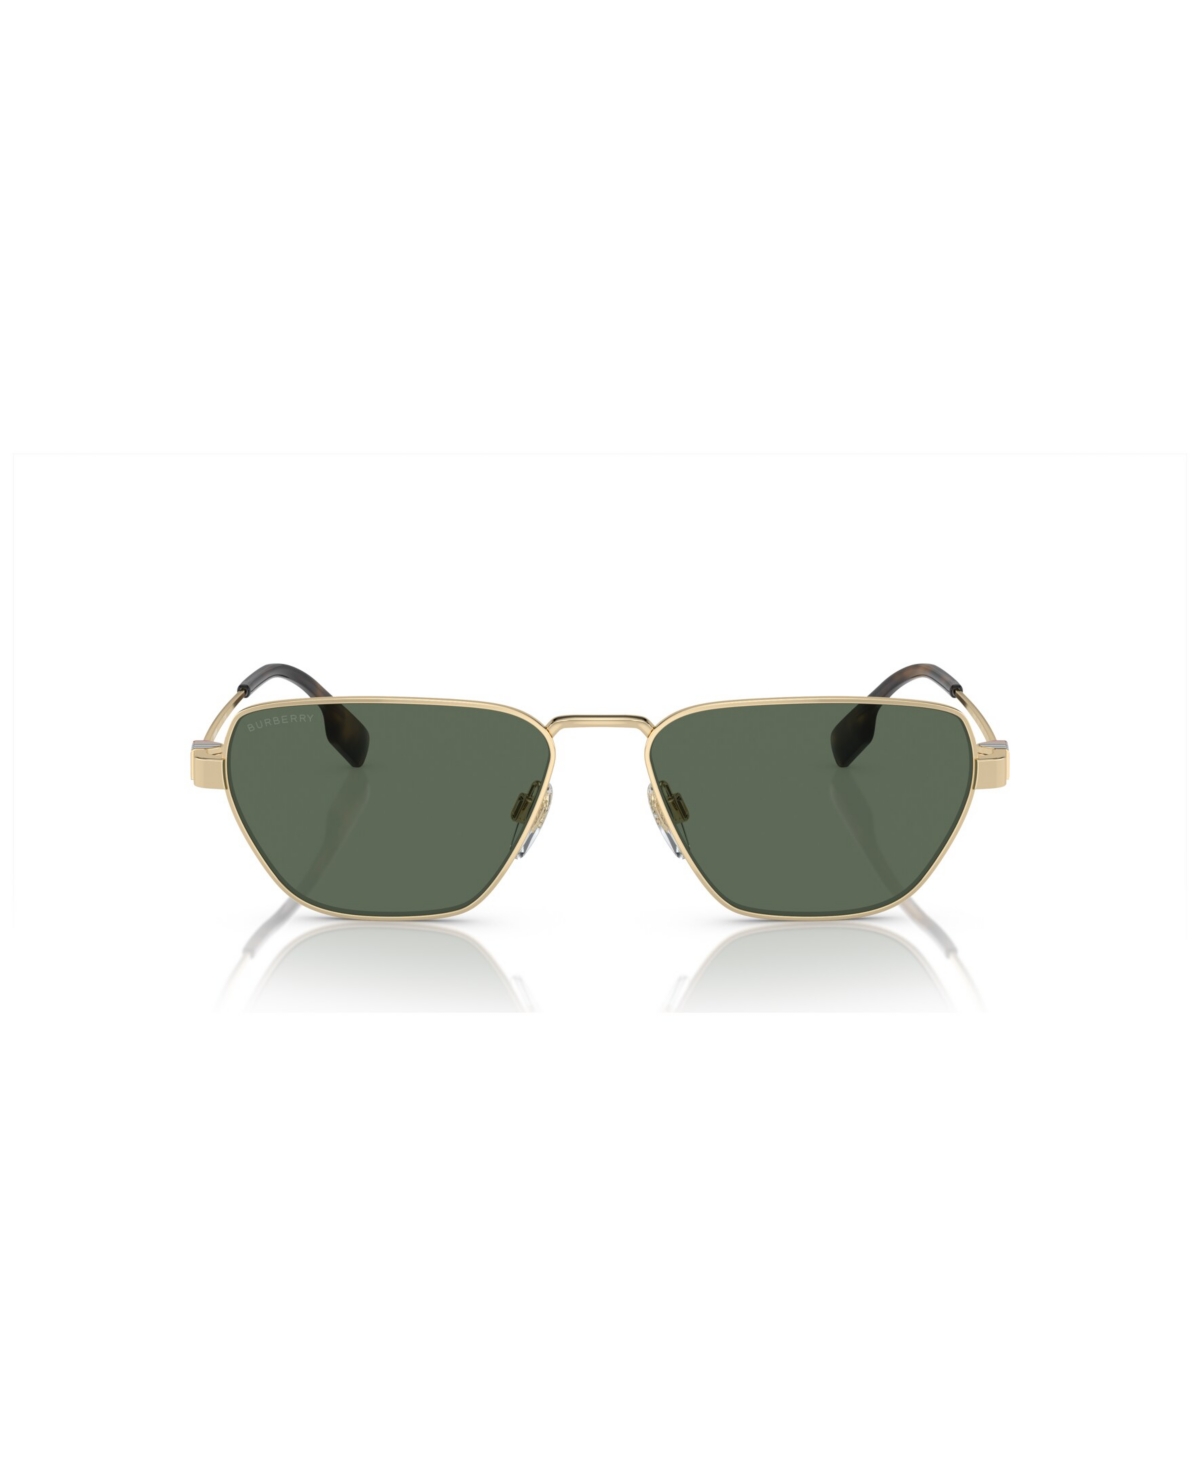 Burberry Men's Sunglasses Be3146 In Light Gold